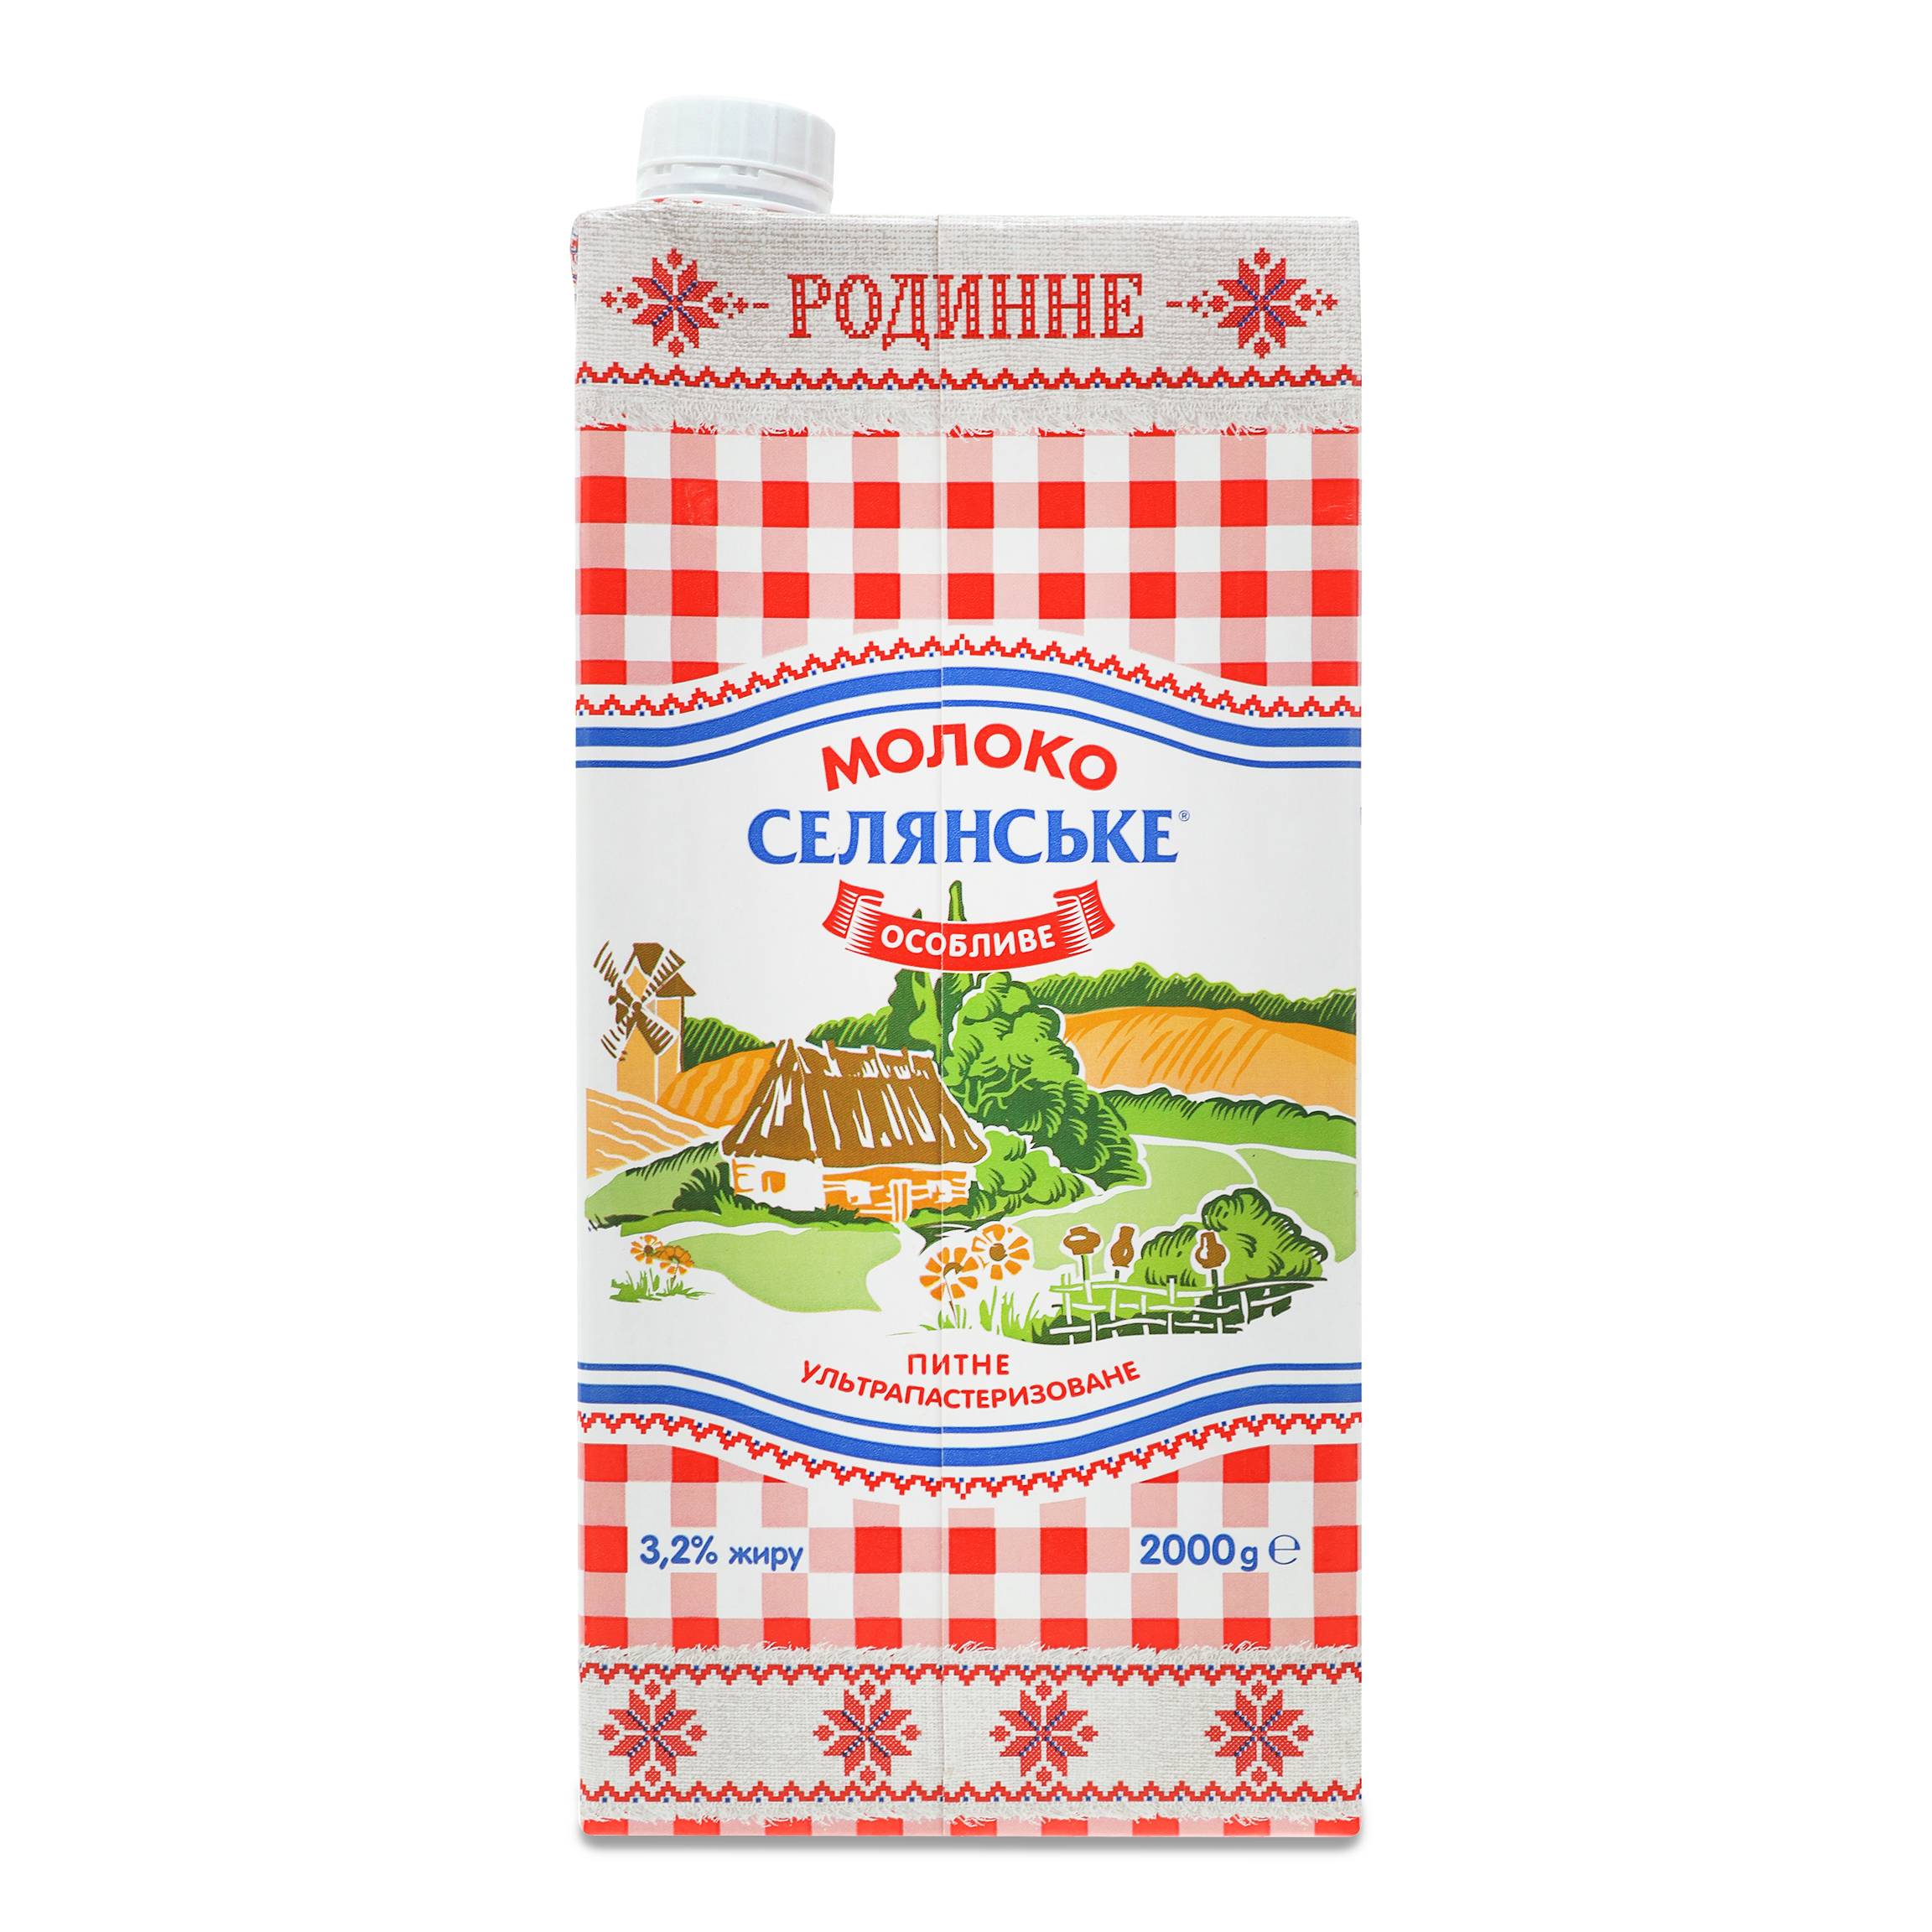 Selianske Rodynne Ultrapasteurized Milk 3,2% 2kg